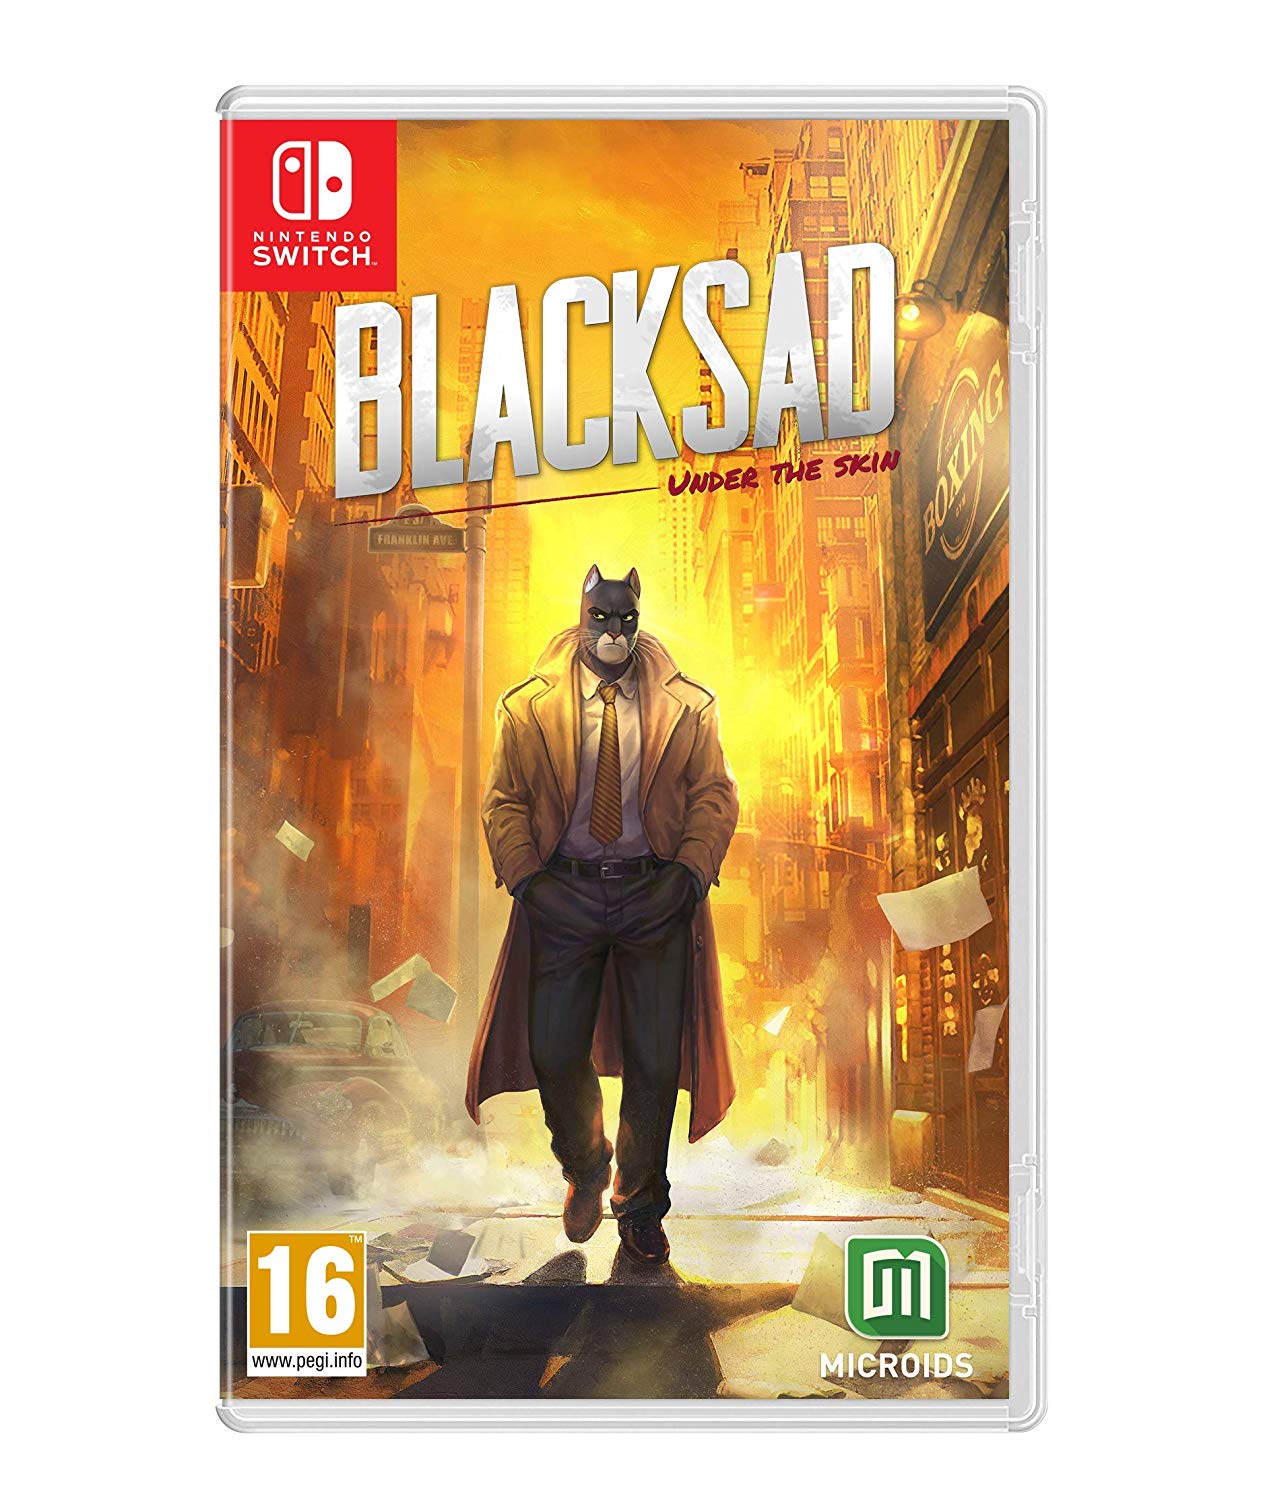 Blacksad: Under the Skin (Nintendo Switch) - Offer Games